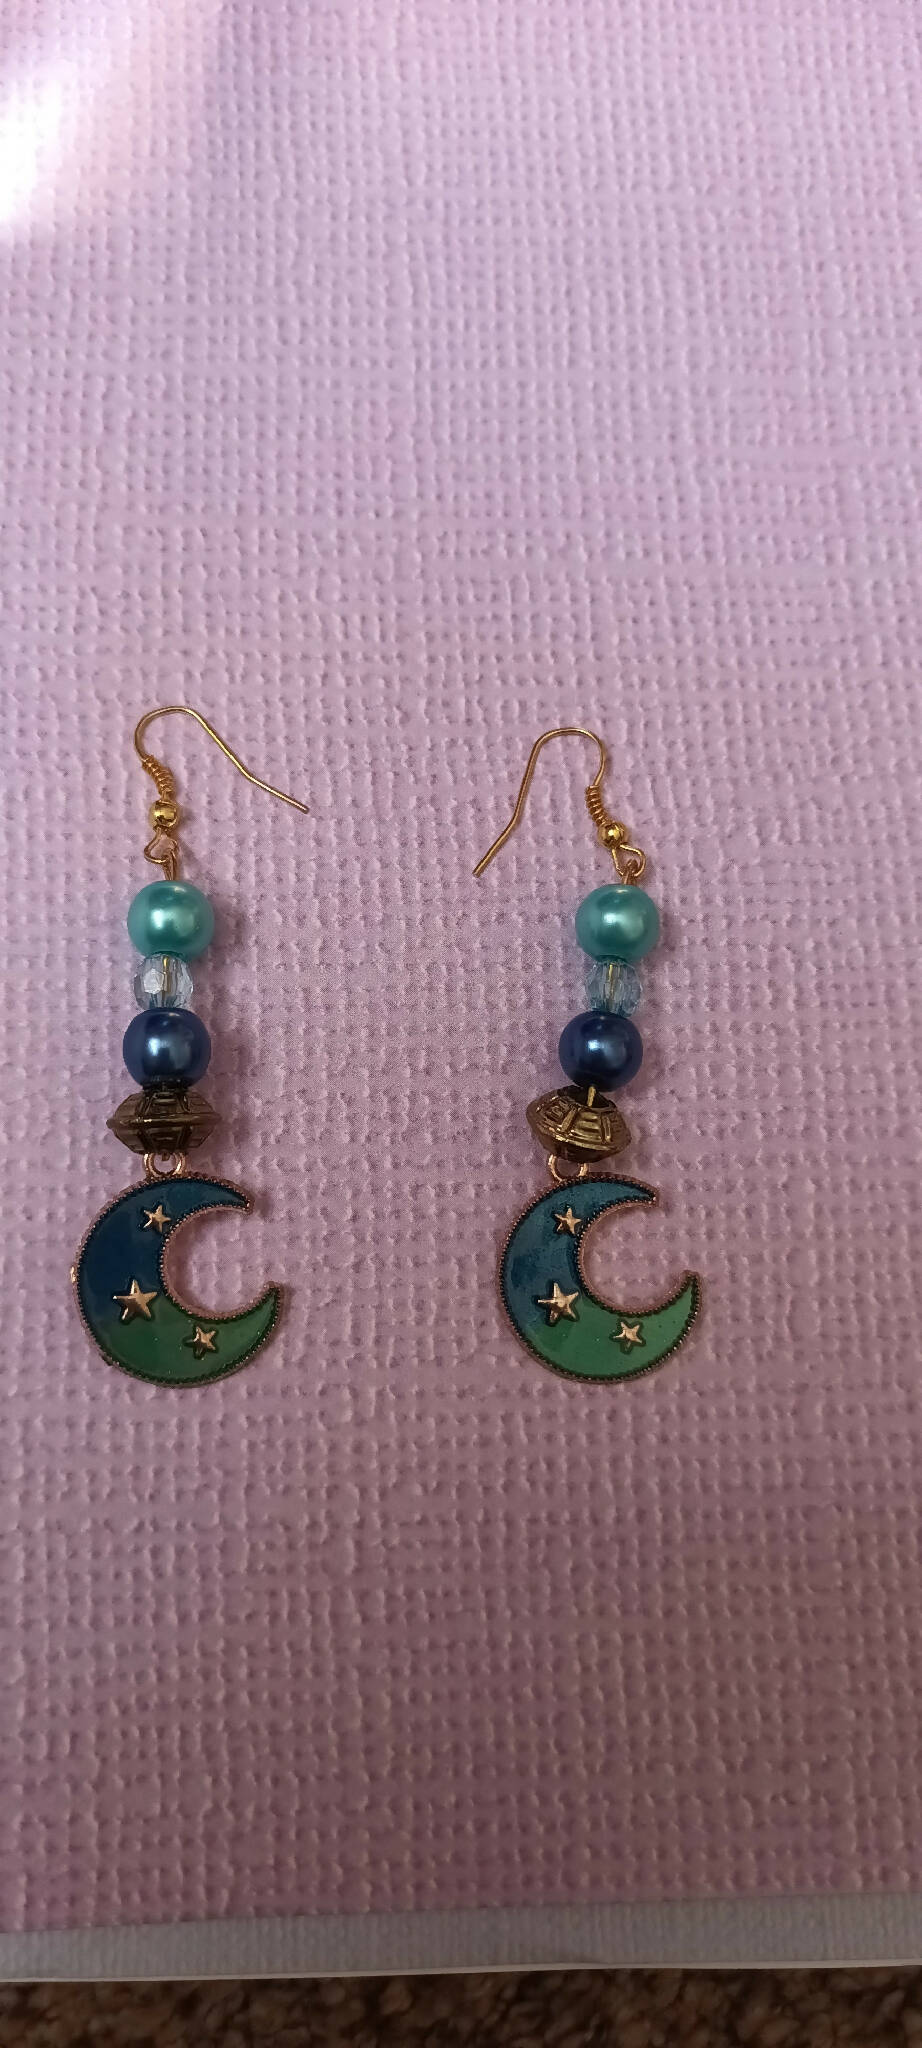 Star moon earrings